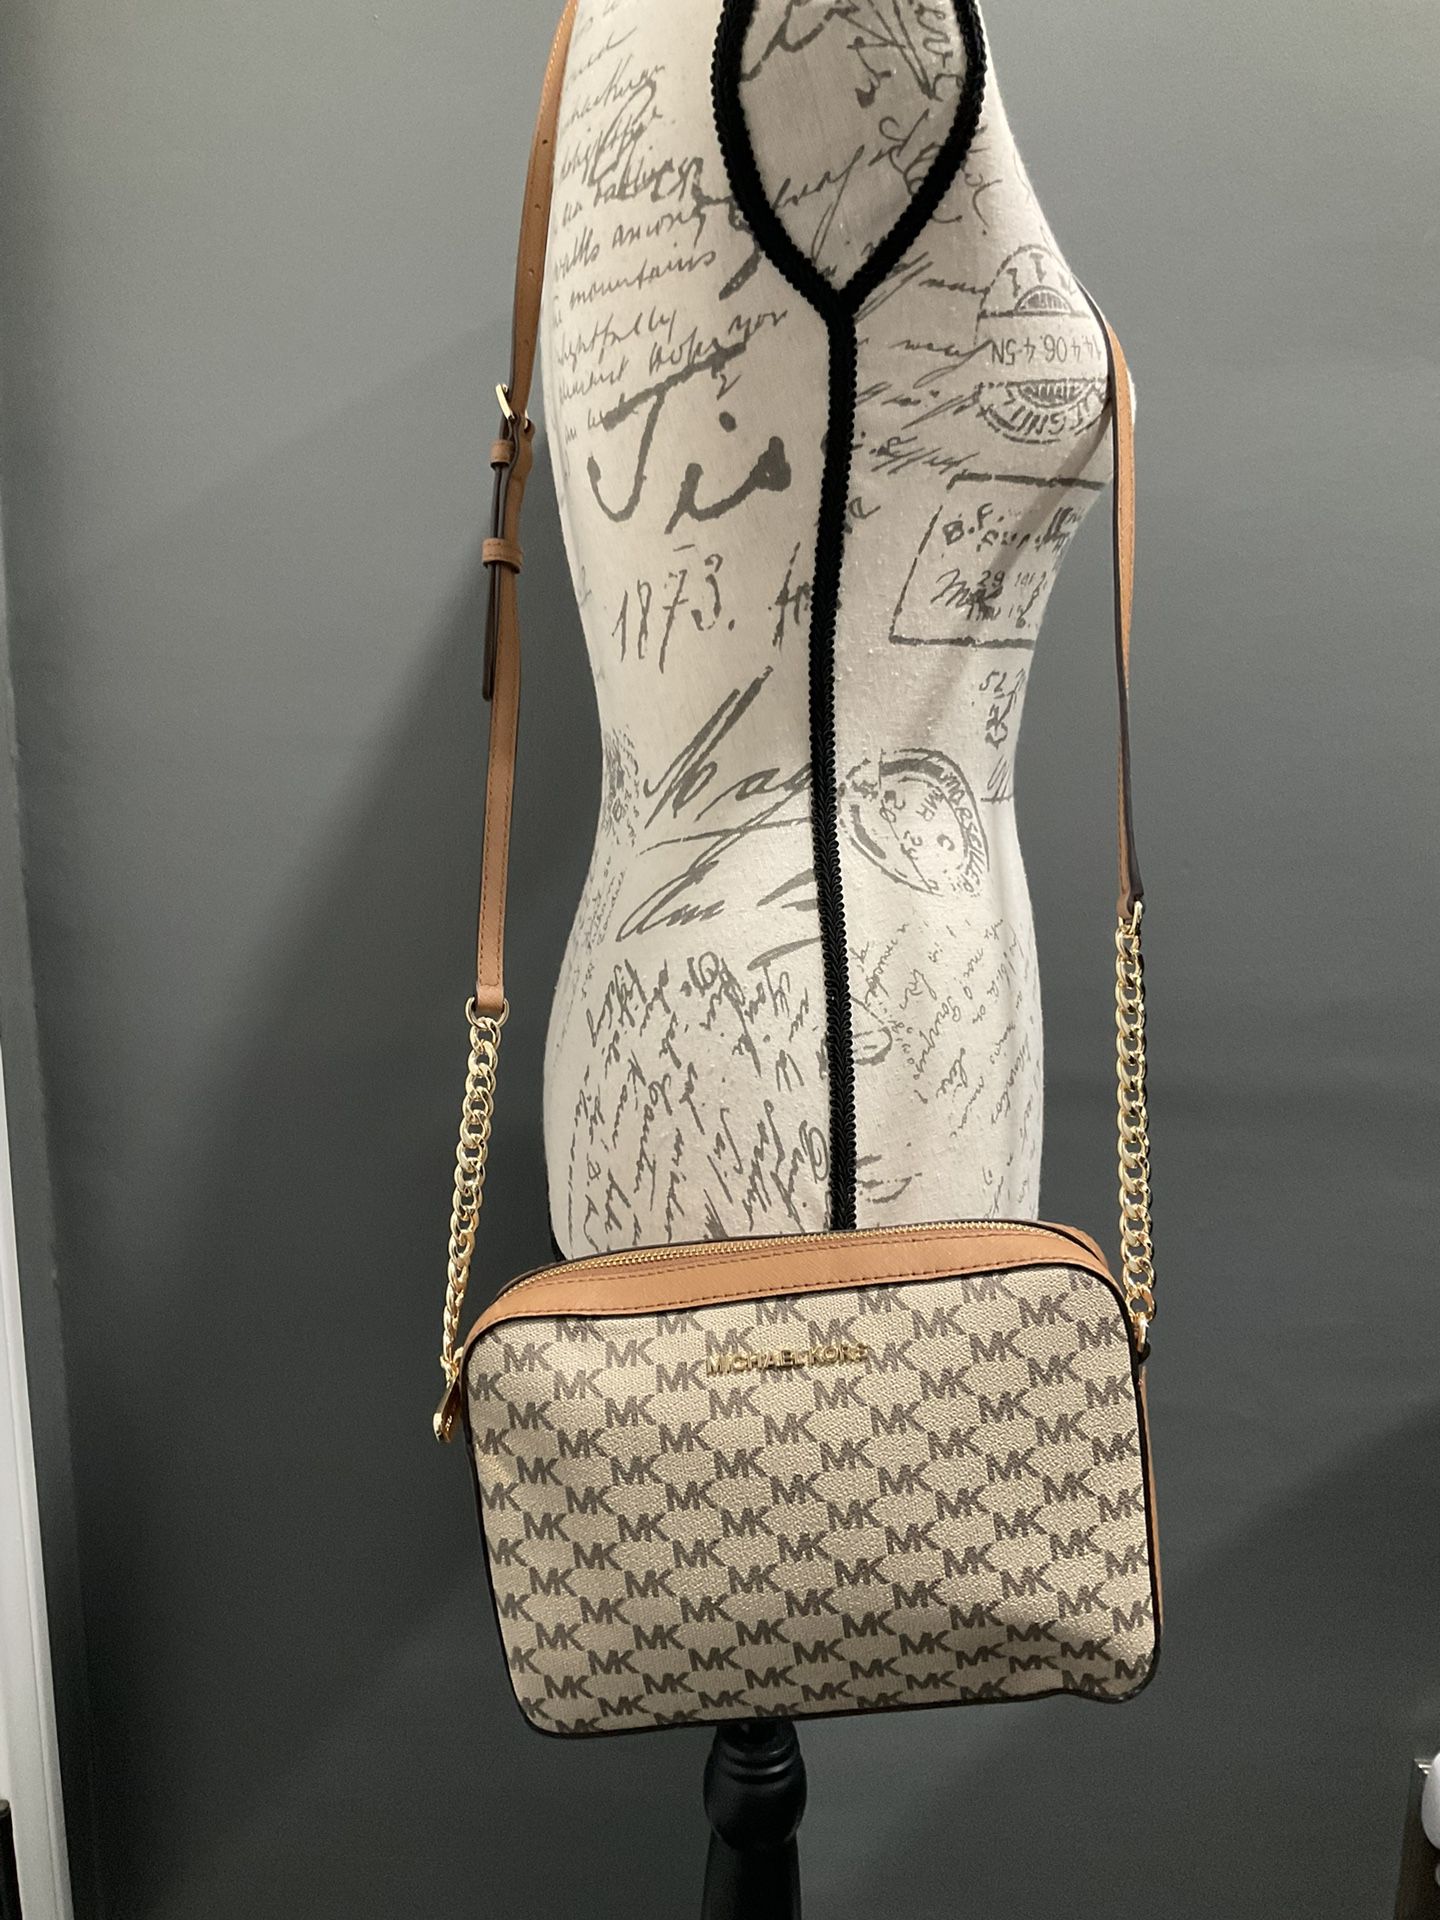 Michael Kors Jet Set Large Logo Shoulder Bag for Sale in Bloomingdale, IL -  OfferUp